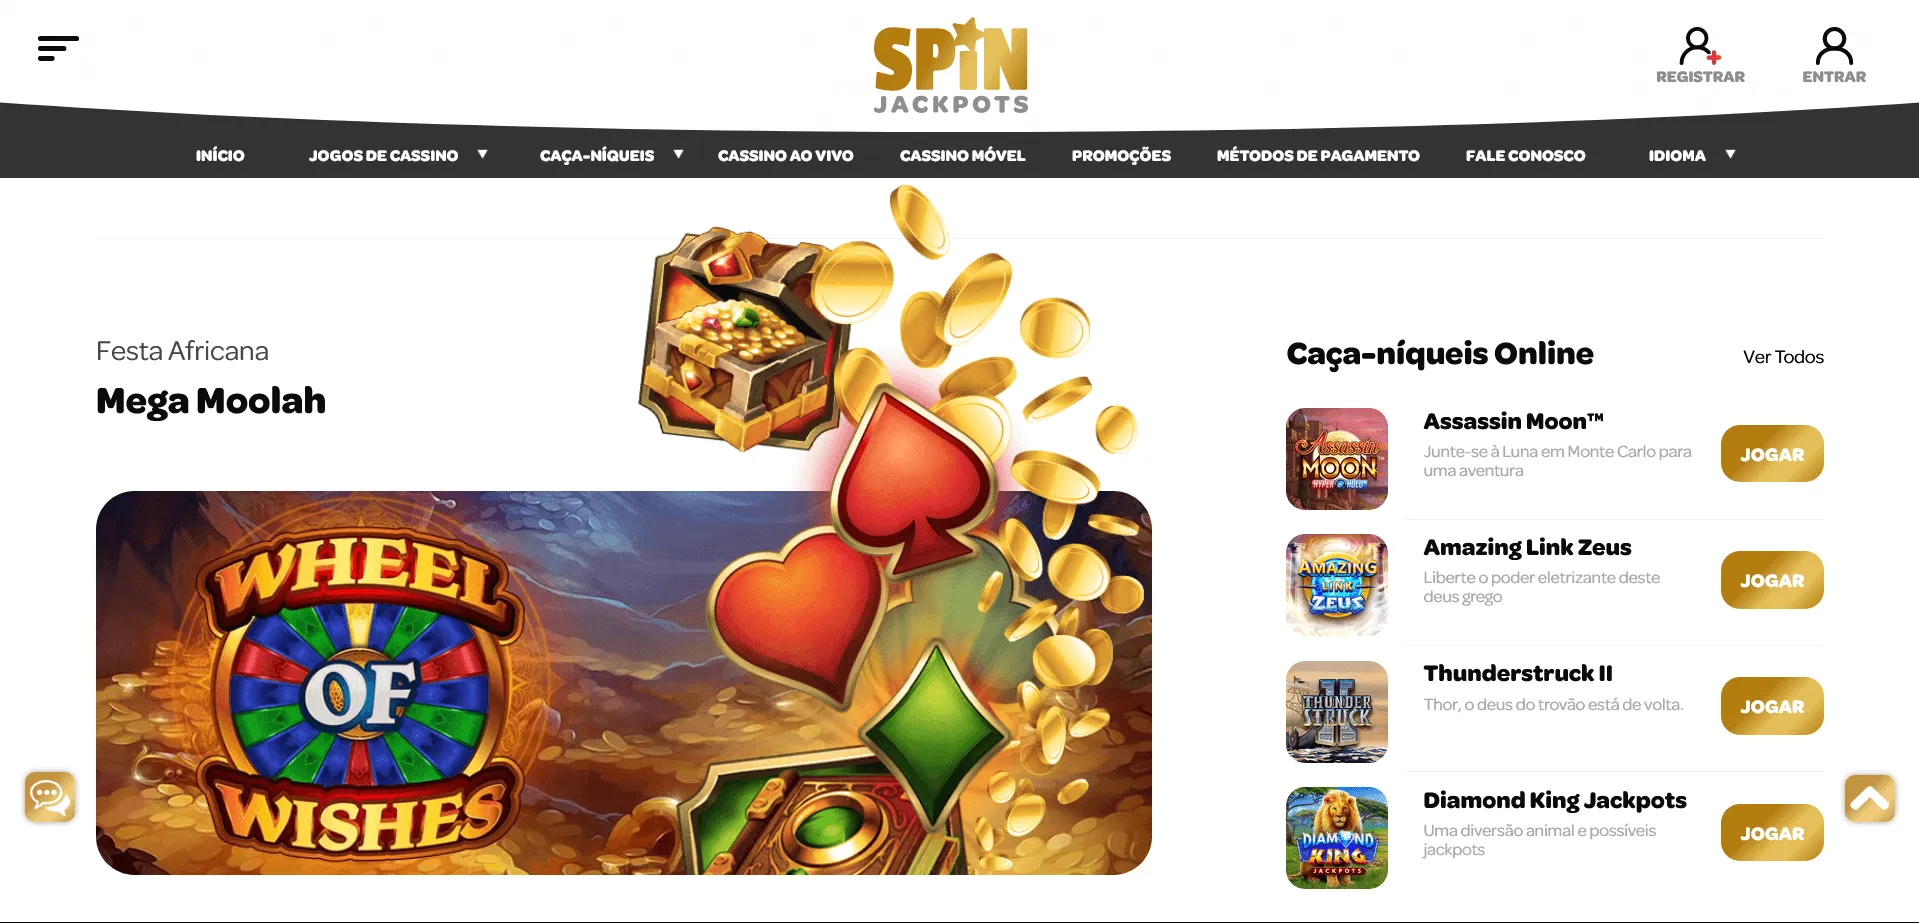 Condições de registro no Spin Casino